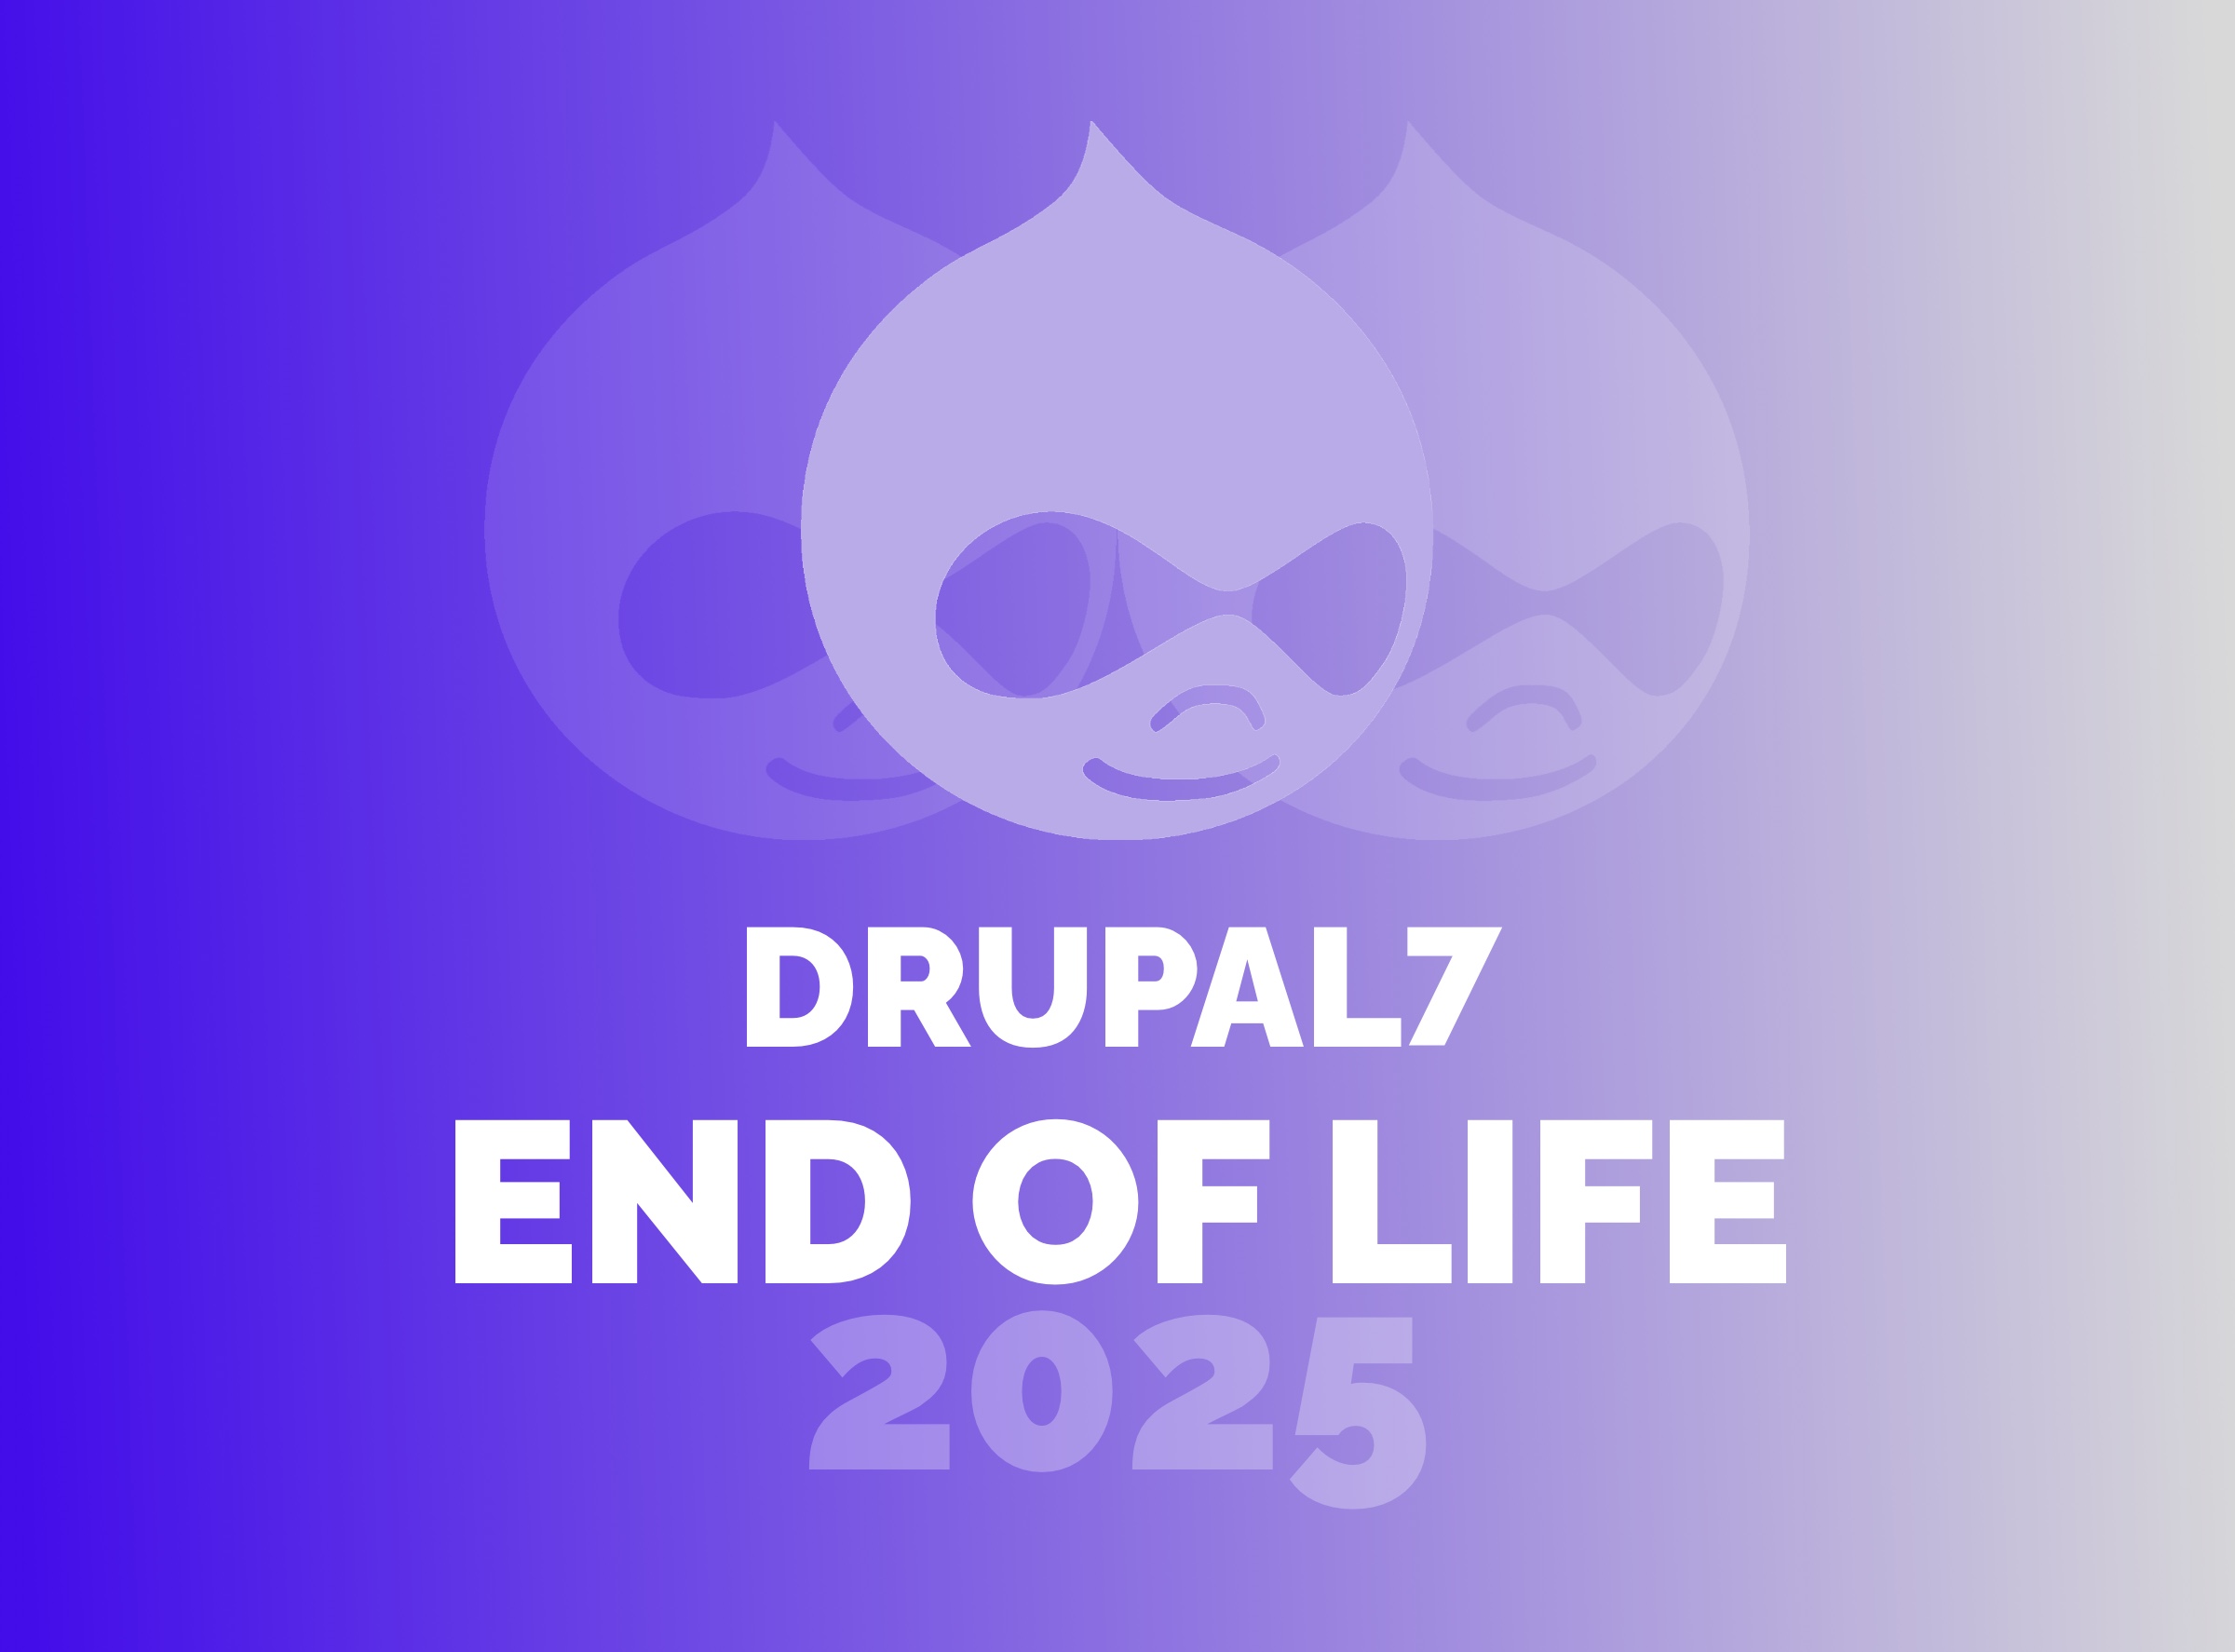 Drupal 7 End of Life